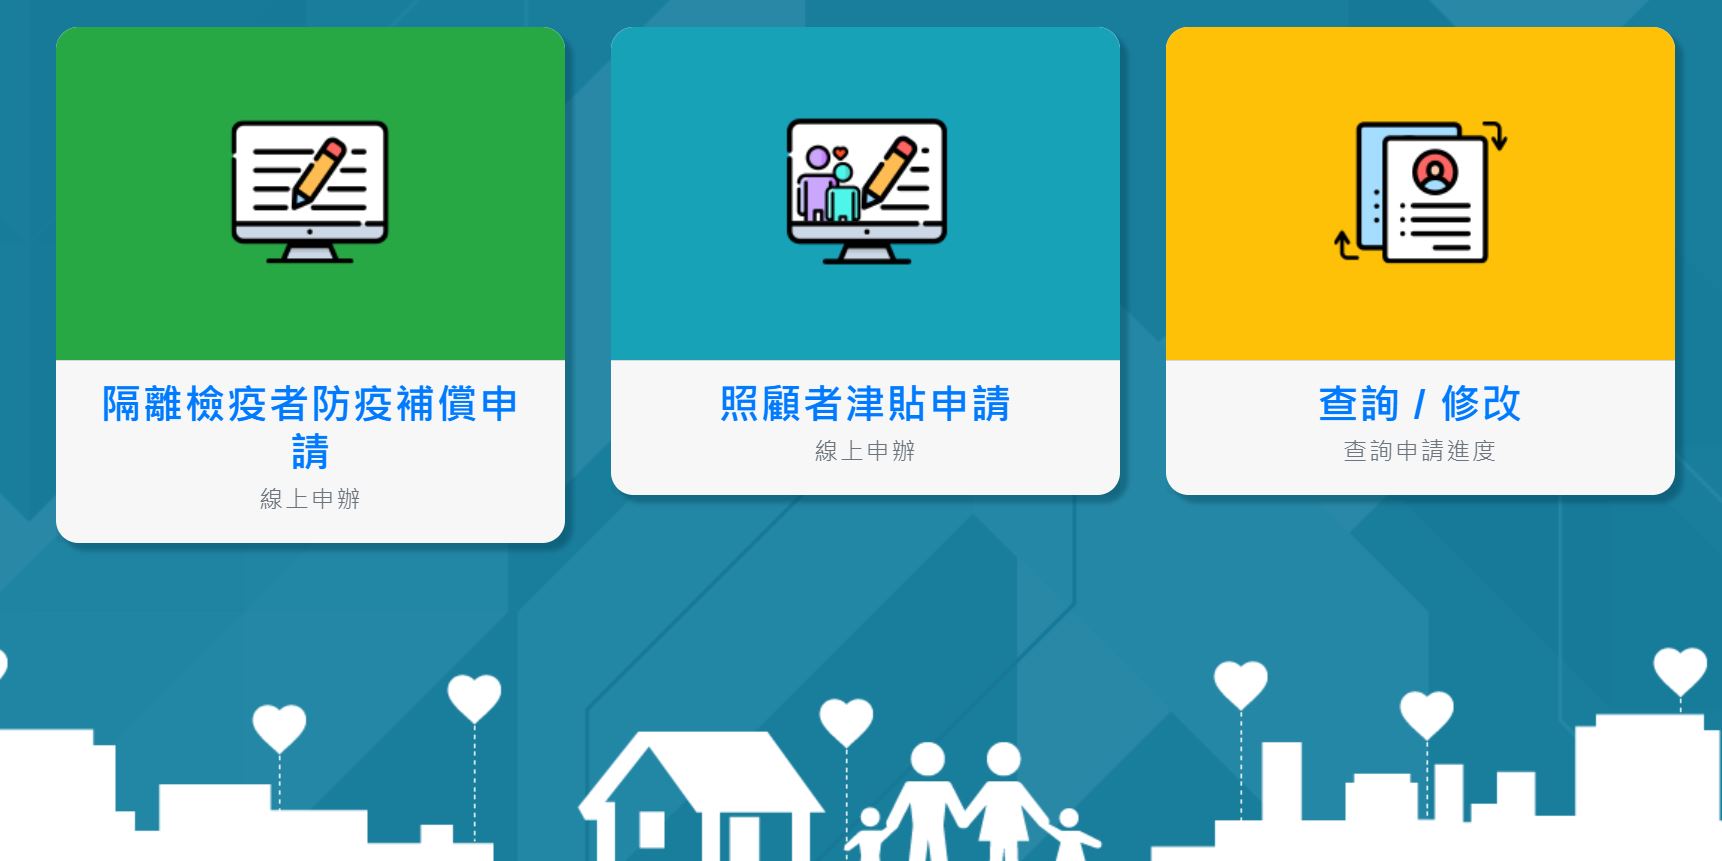 Trang chủ website đăng ký xin trợ cấp phòng dịch của Bộ Y tế và Phúc lợi Đài Loan. (Nguồn ảnh: Website Bộ Y tế và Phúc lợi Đài Loan)